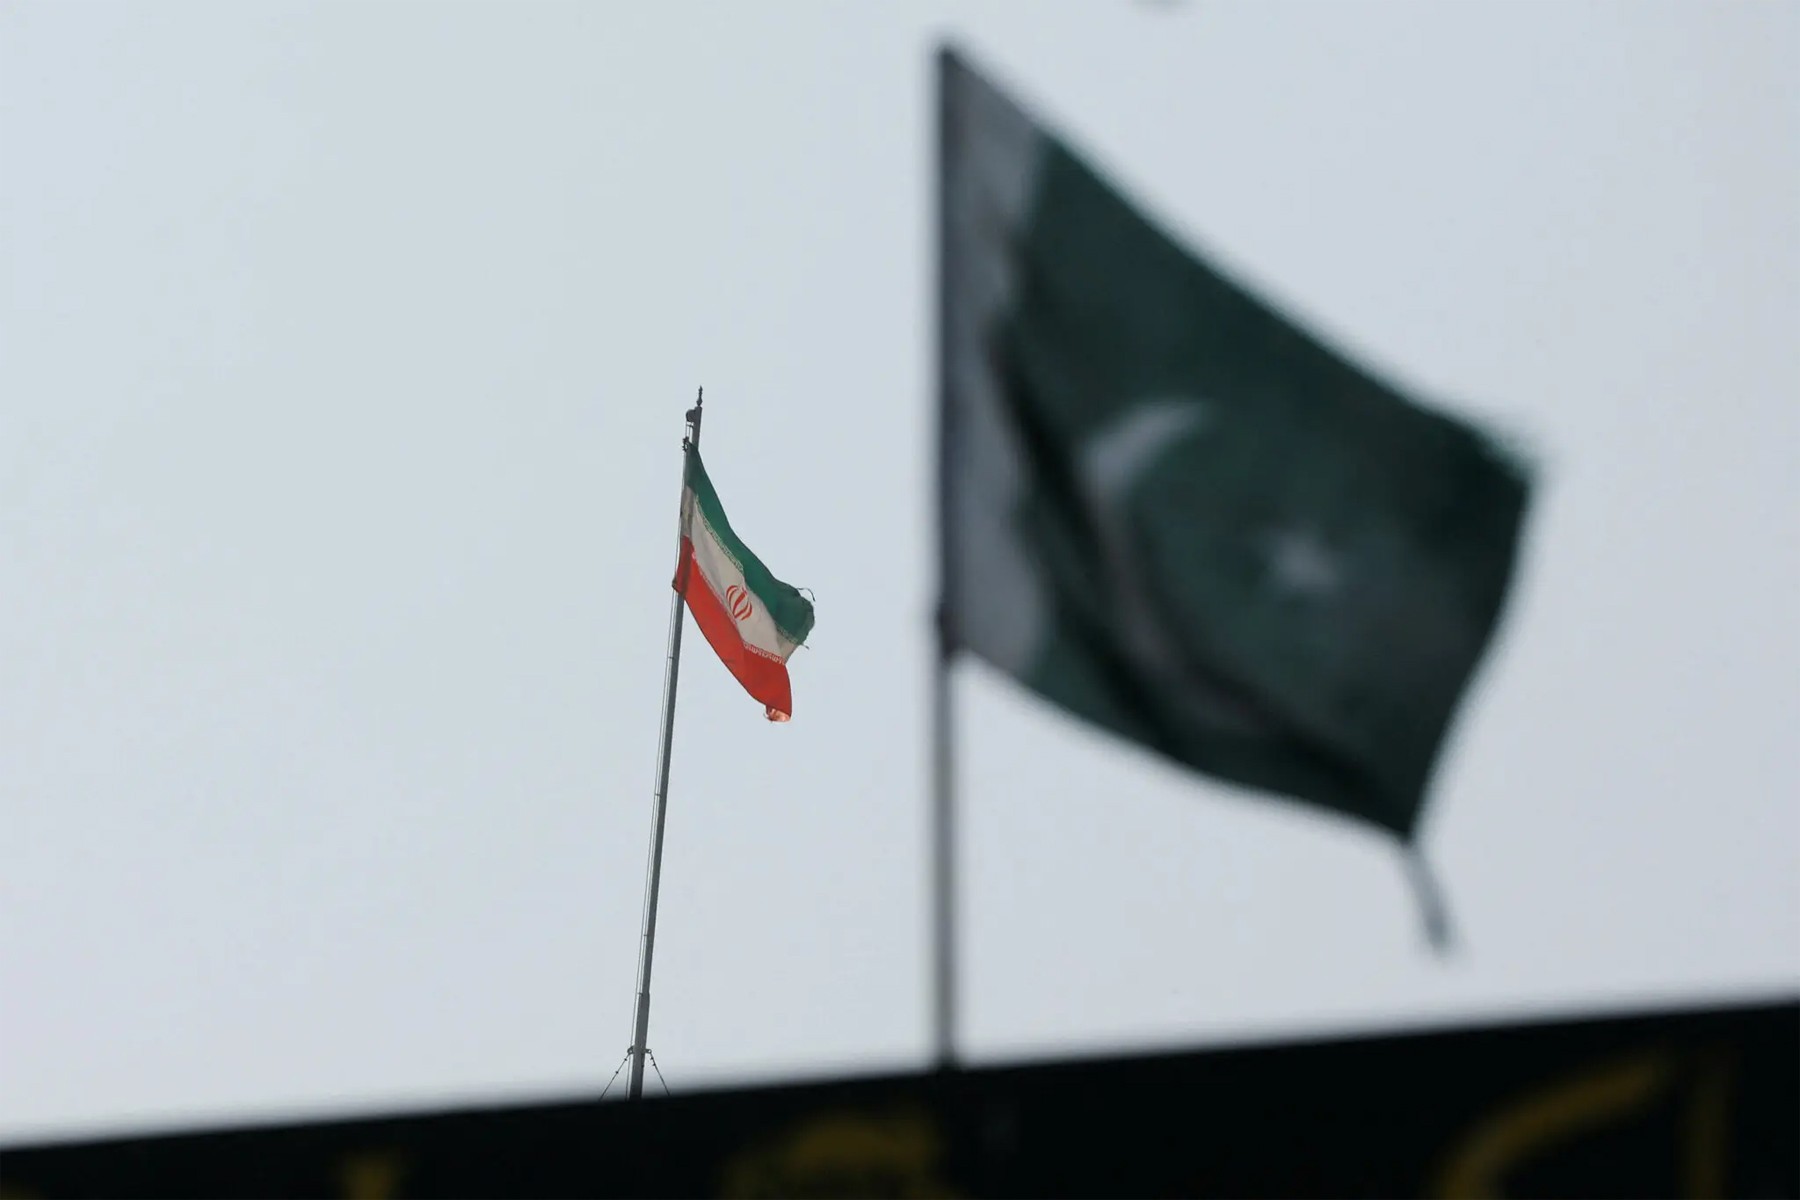 پاکستان در موقعیتی برای جنگیدن، به دنبال جدایی با ایران است